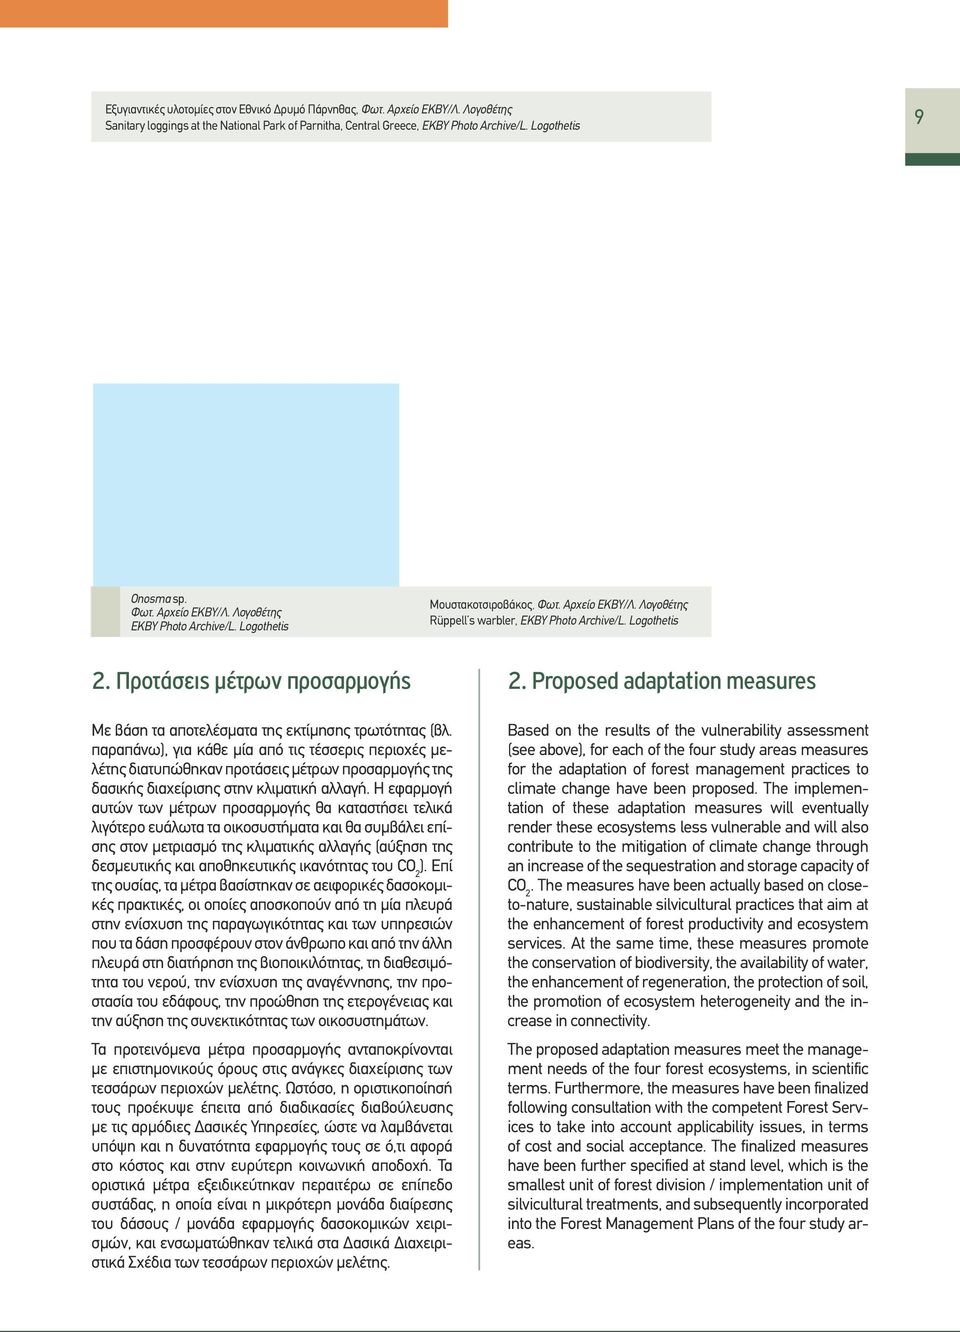 Proposed adaptation measures Με βάση τα αποτελέσματα της εκτίμησης τρωτότητας (βλ.